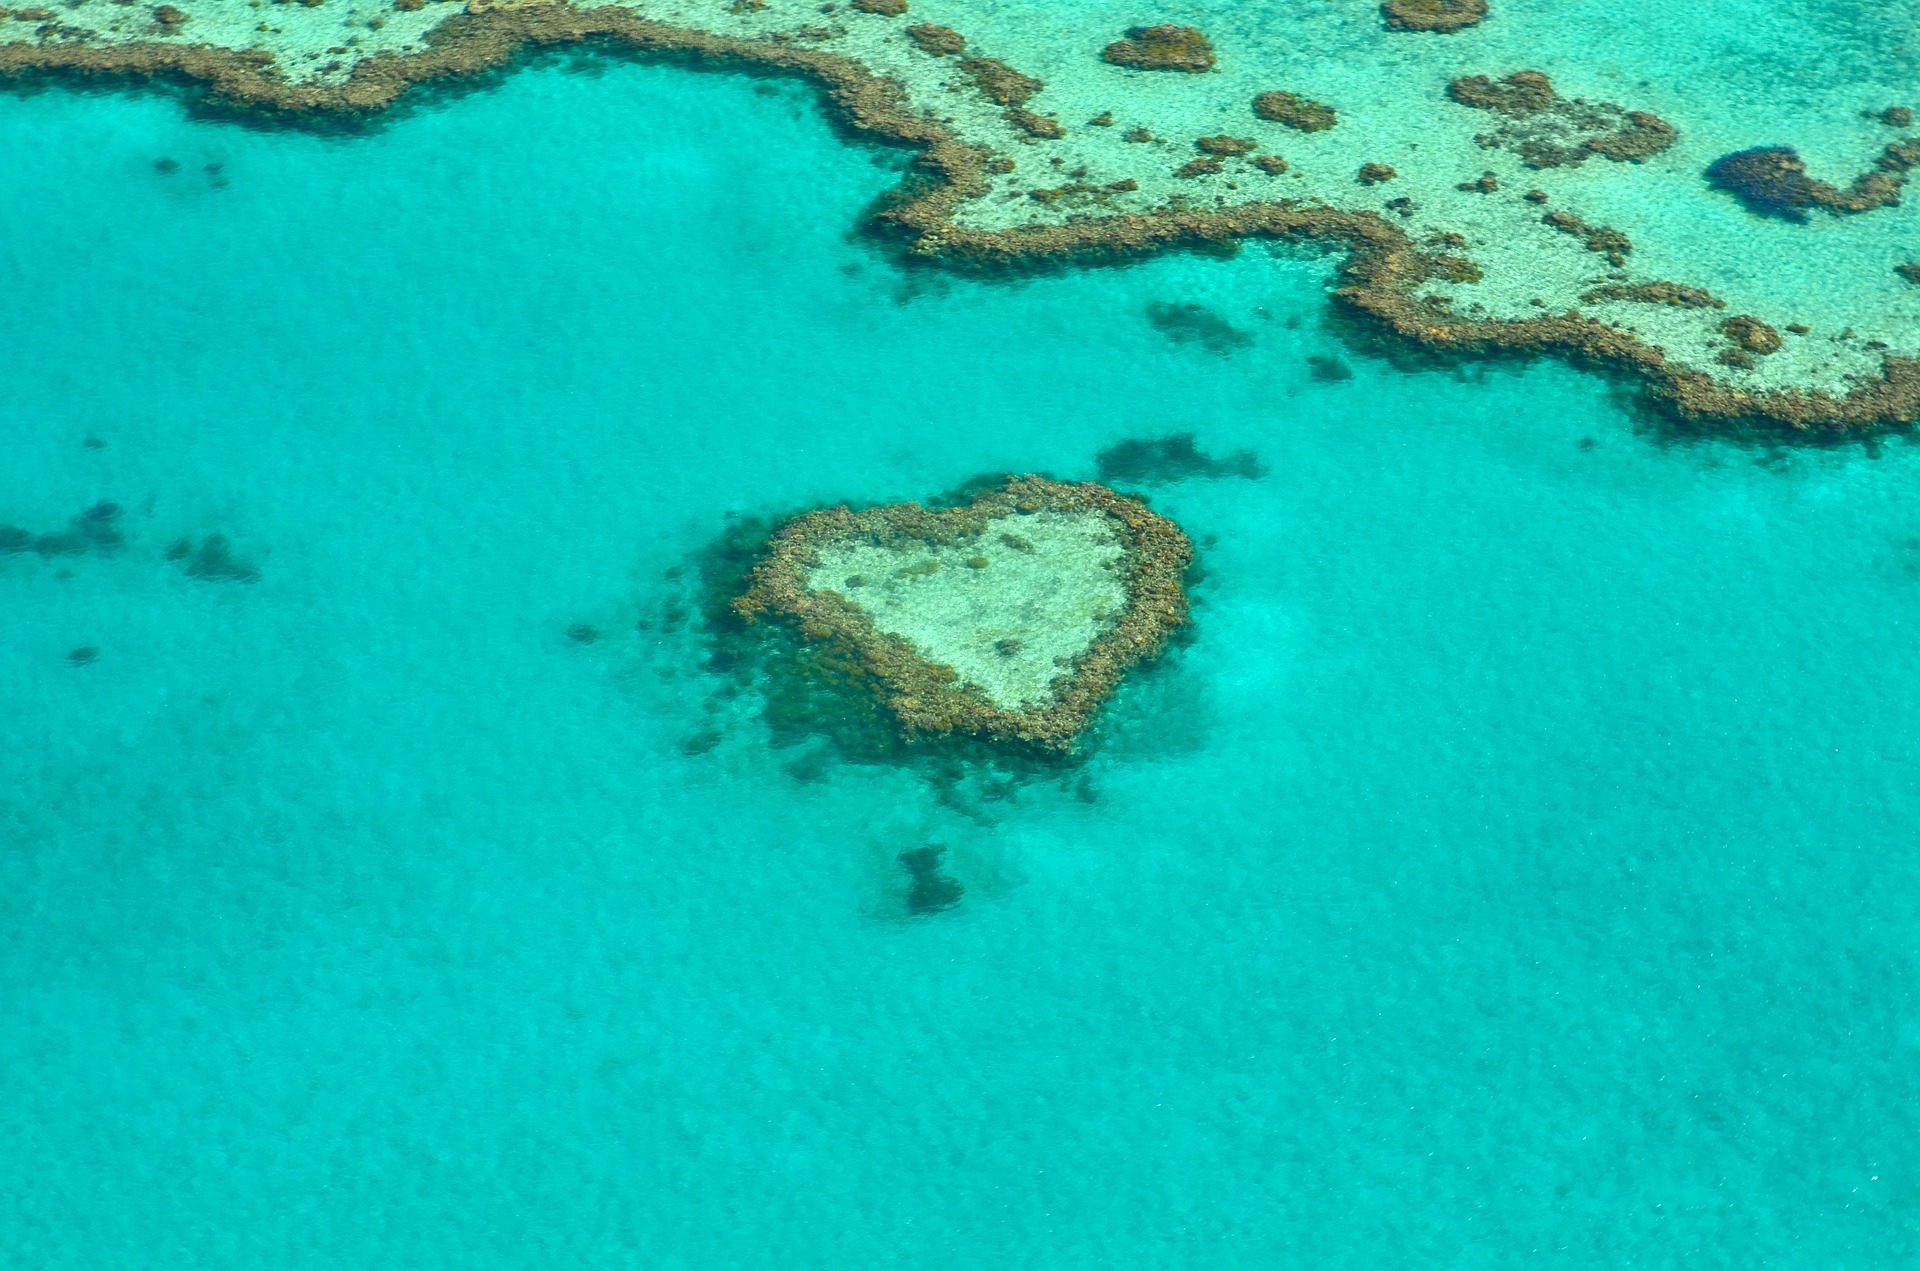 Heart reef in Great Barrier Reef